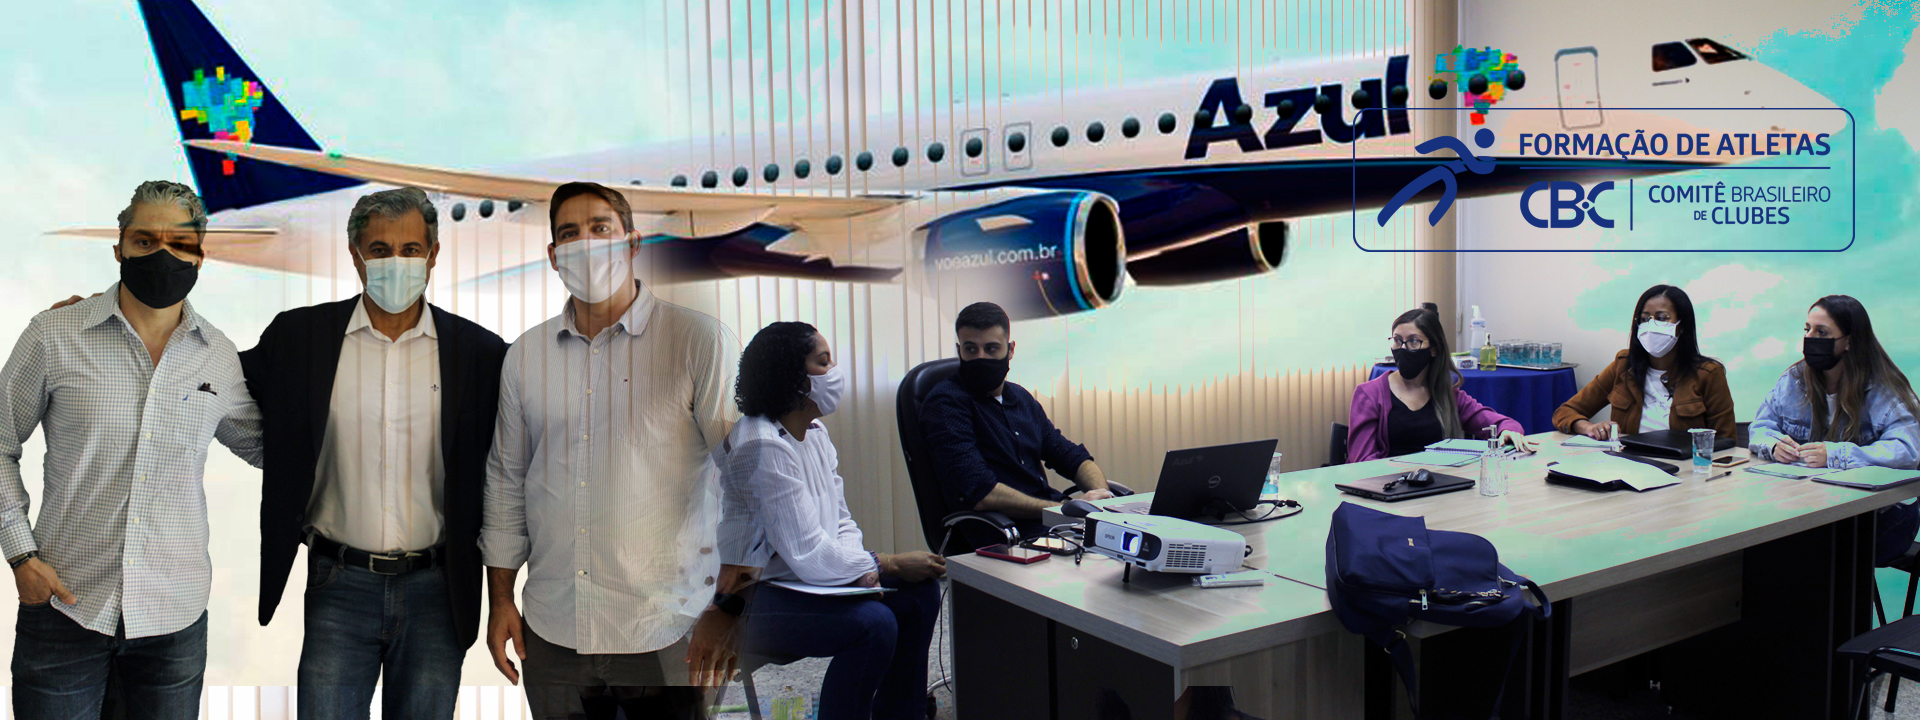 Azul Linhas Aéreas participa de treinamento do Comitê Brasileiro de Clubes (CBC) sobre procedimentos de aquisição de passagens aéreas para os CBI